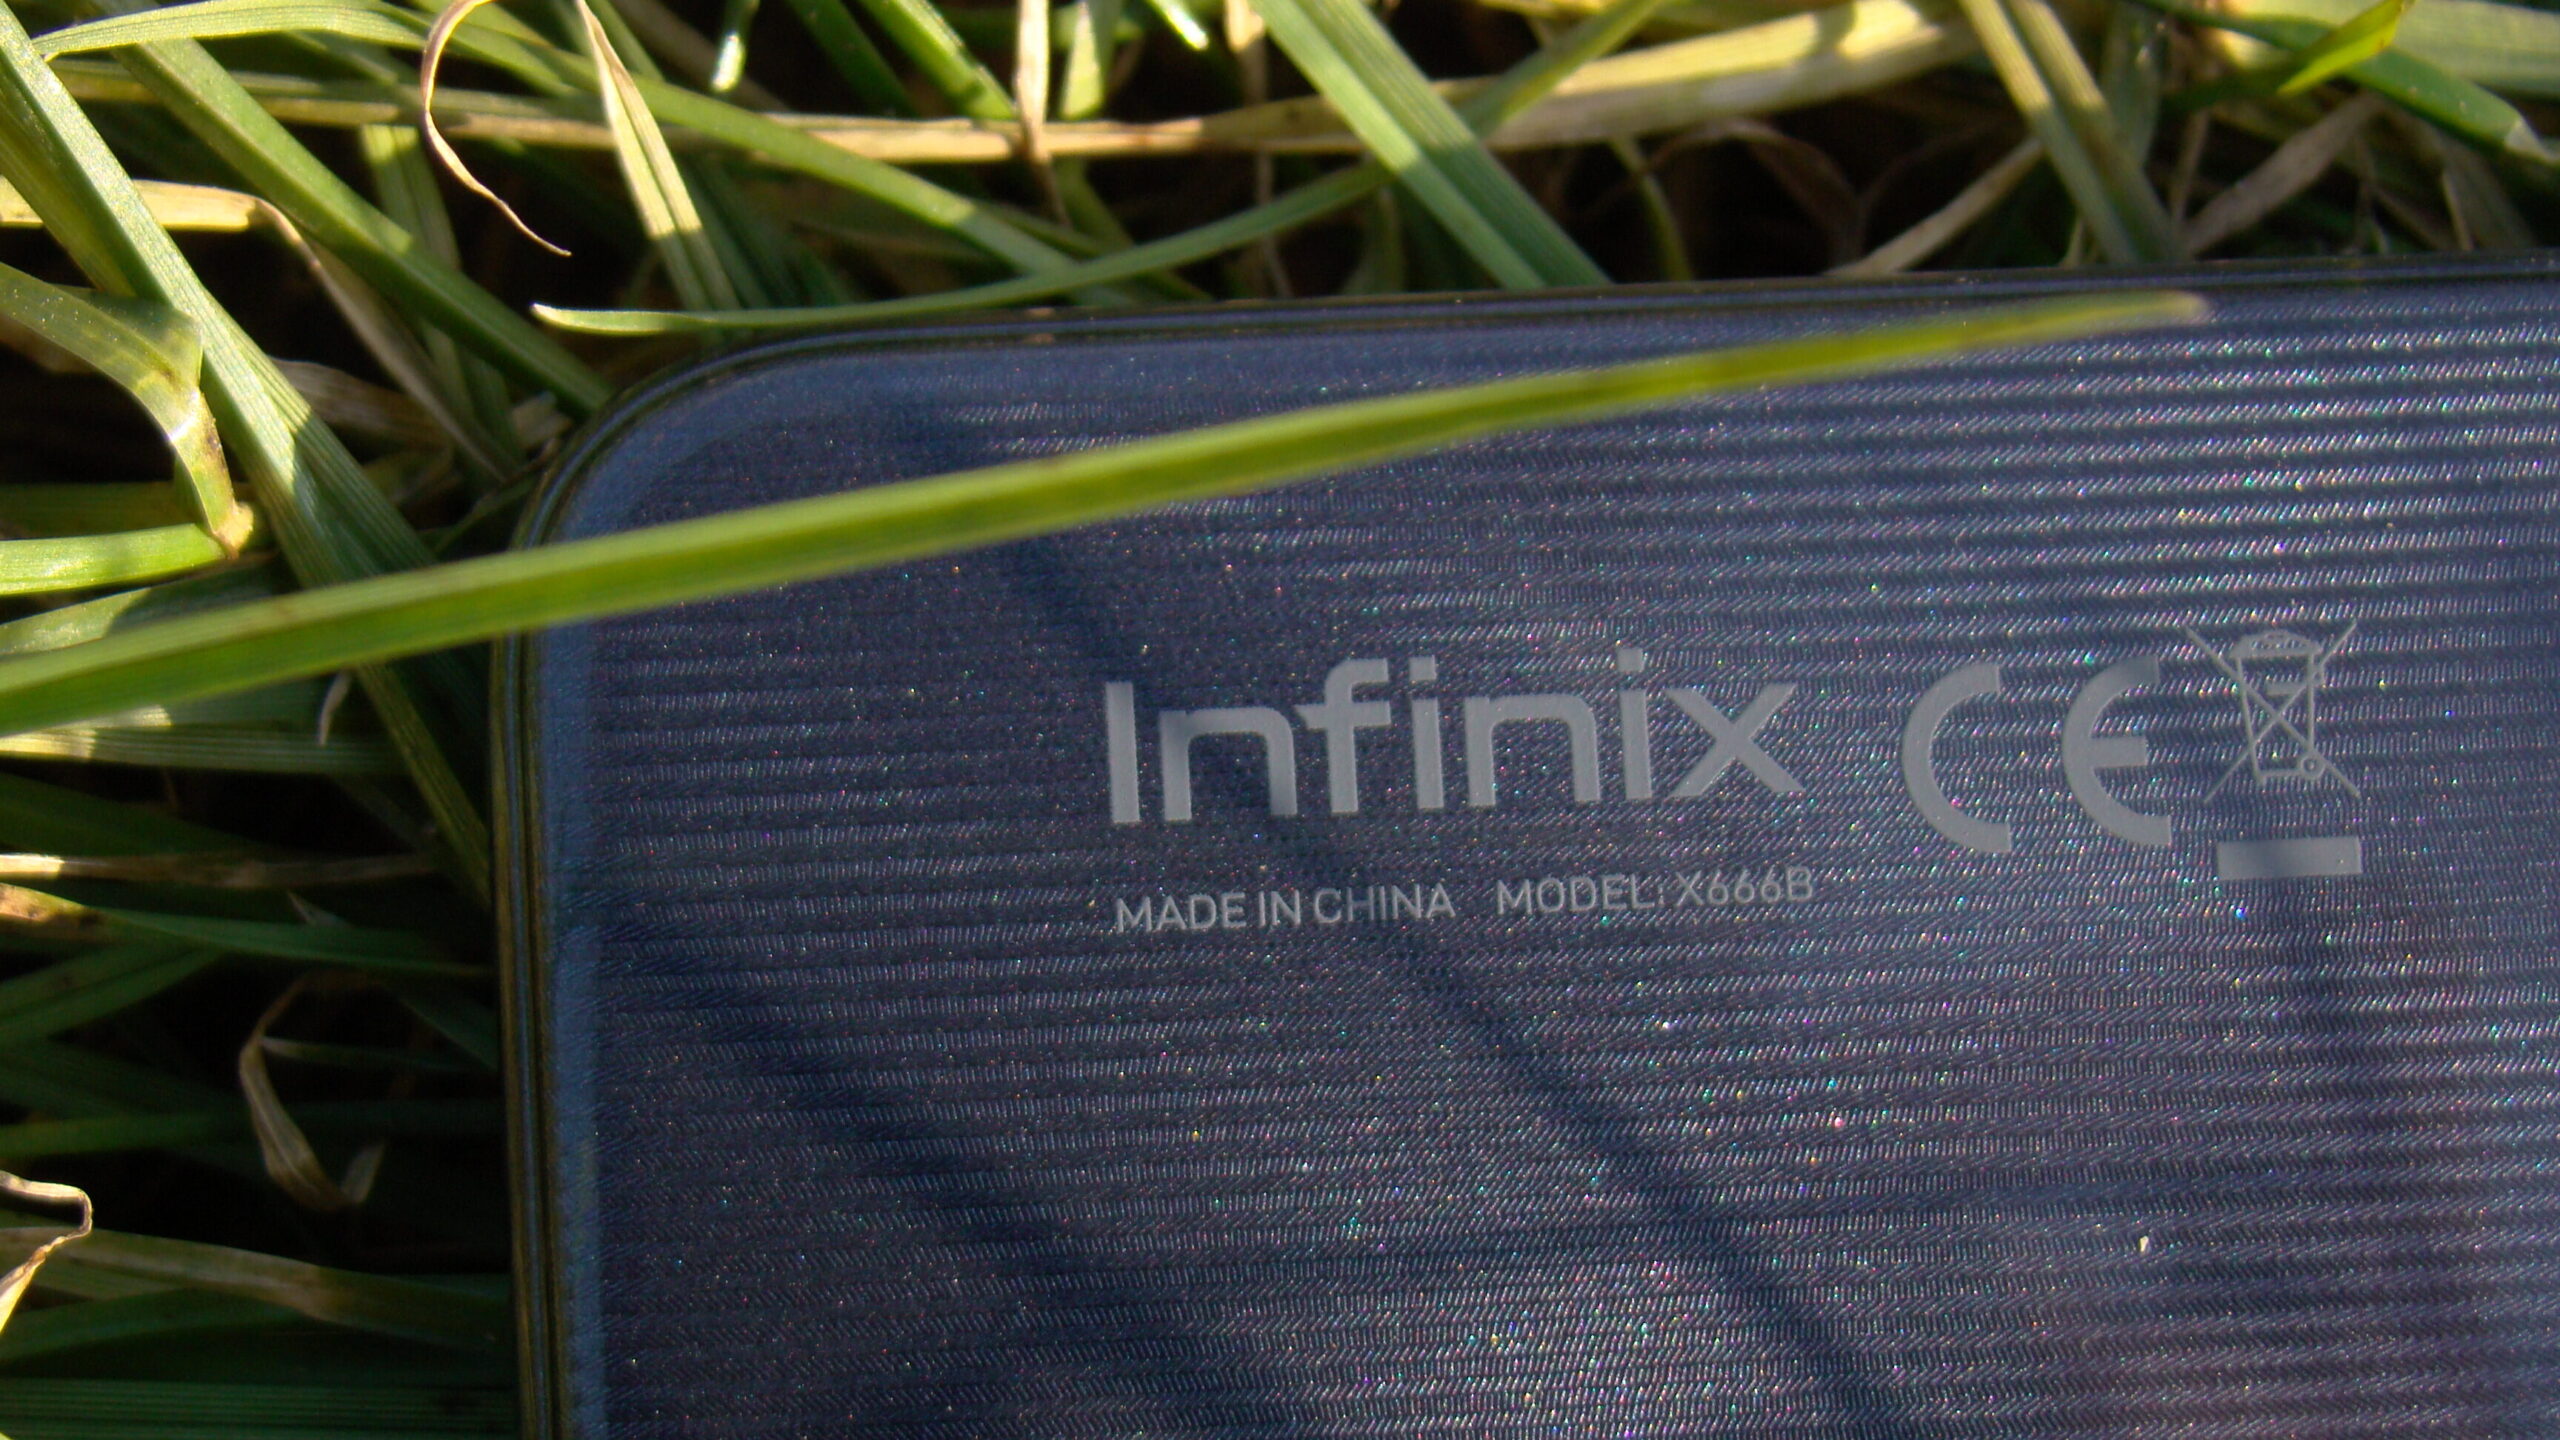 Znaczek producenta Infinix w trawie